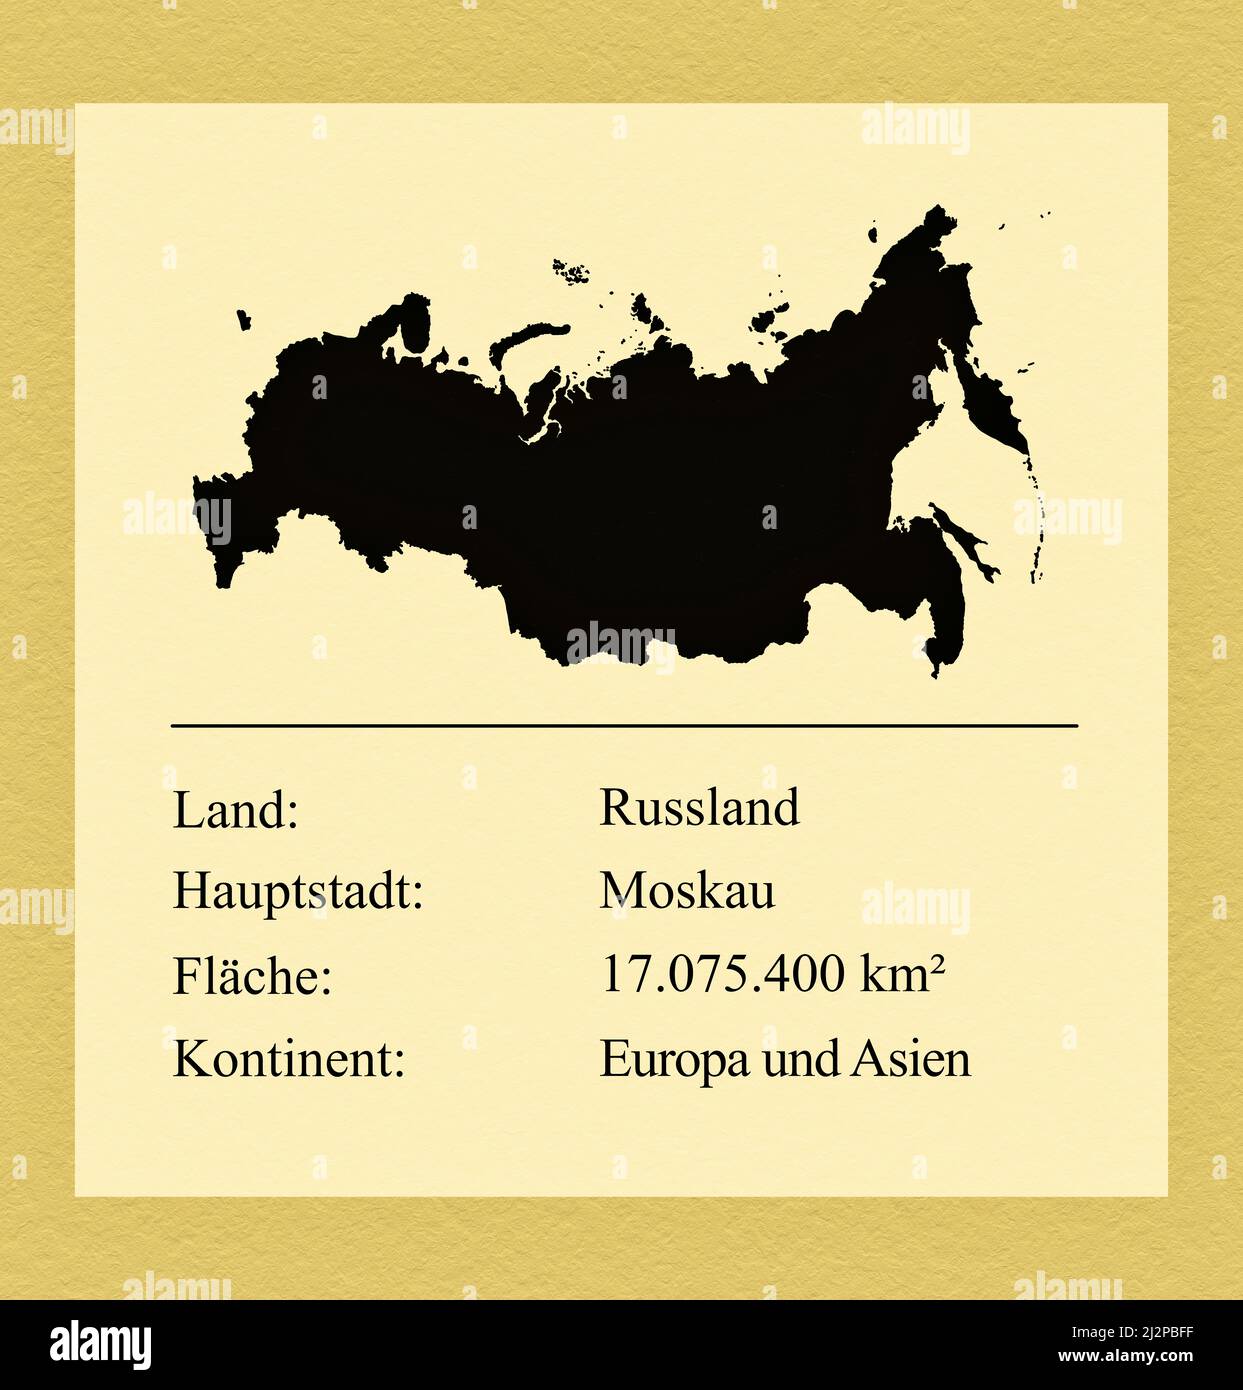 Umrisse des Landes Russland, darunter ein kleiner Steckbrief mit Ländernamen, Hauptstadt, Fläche und Kontinent Foto Stock